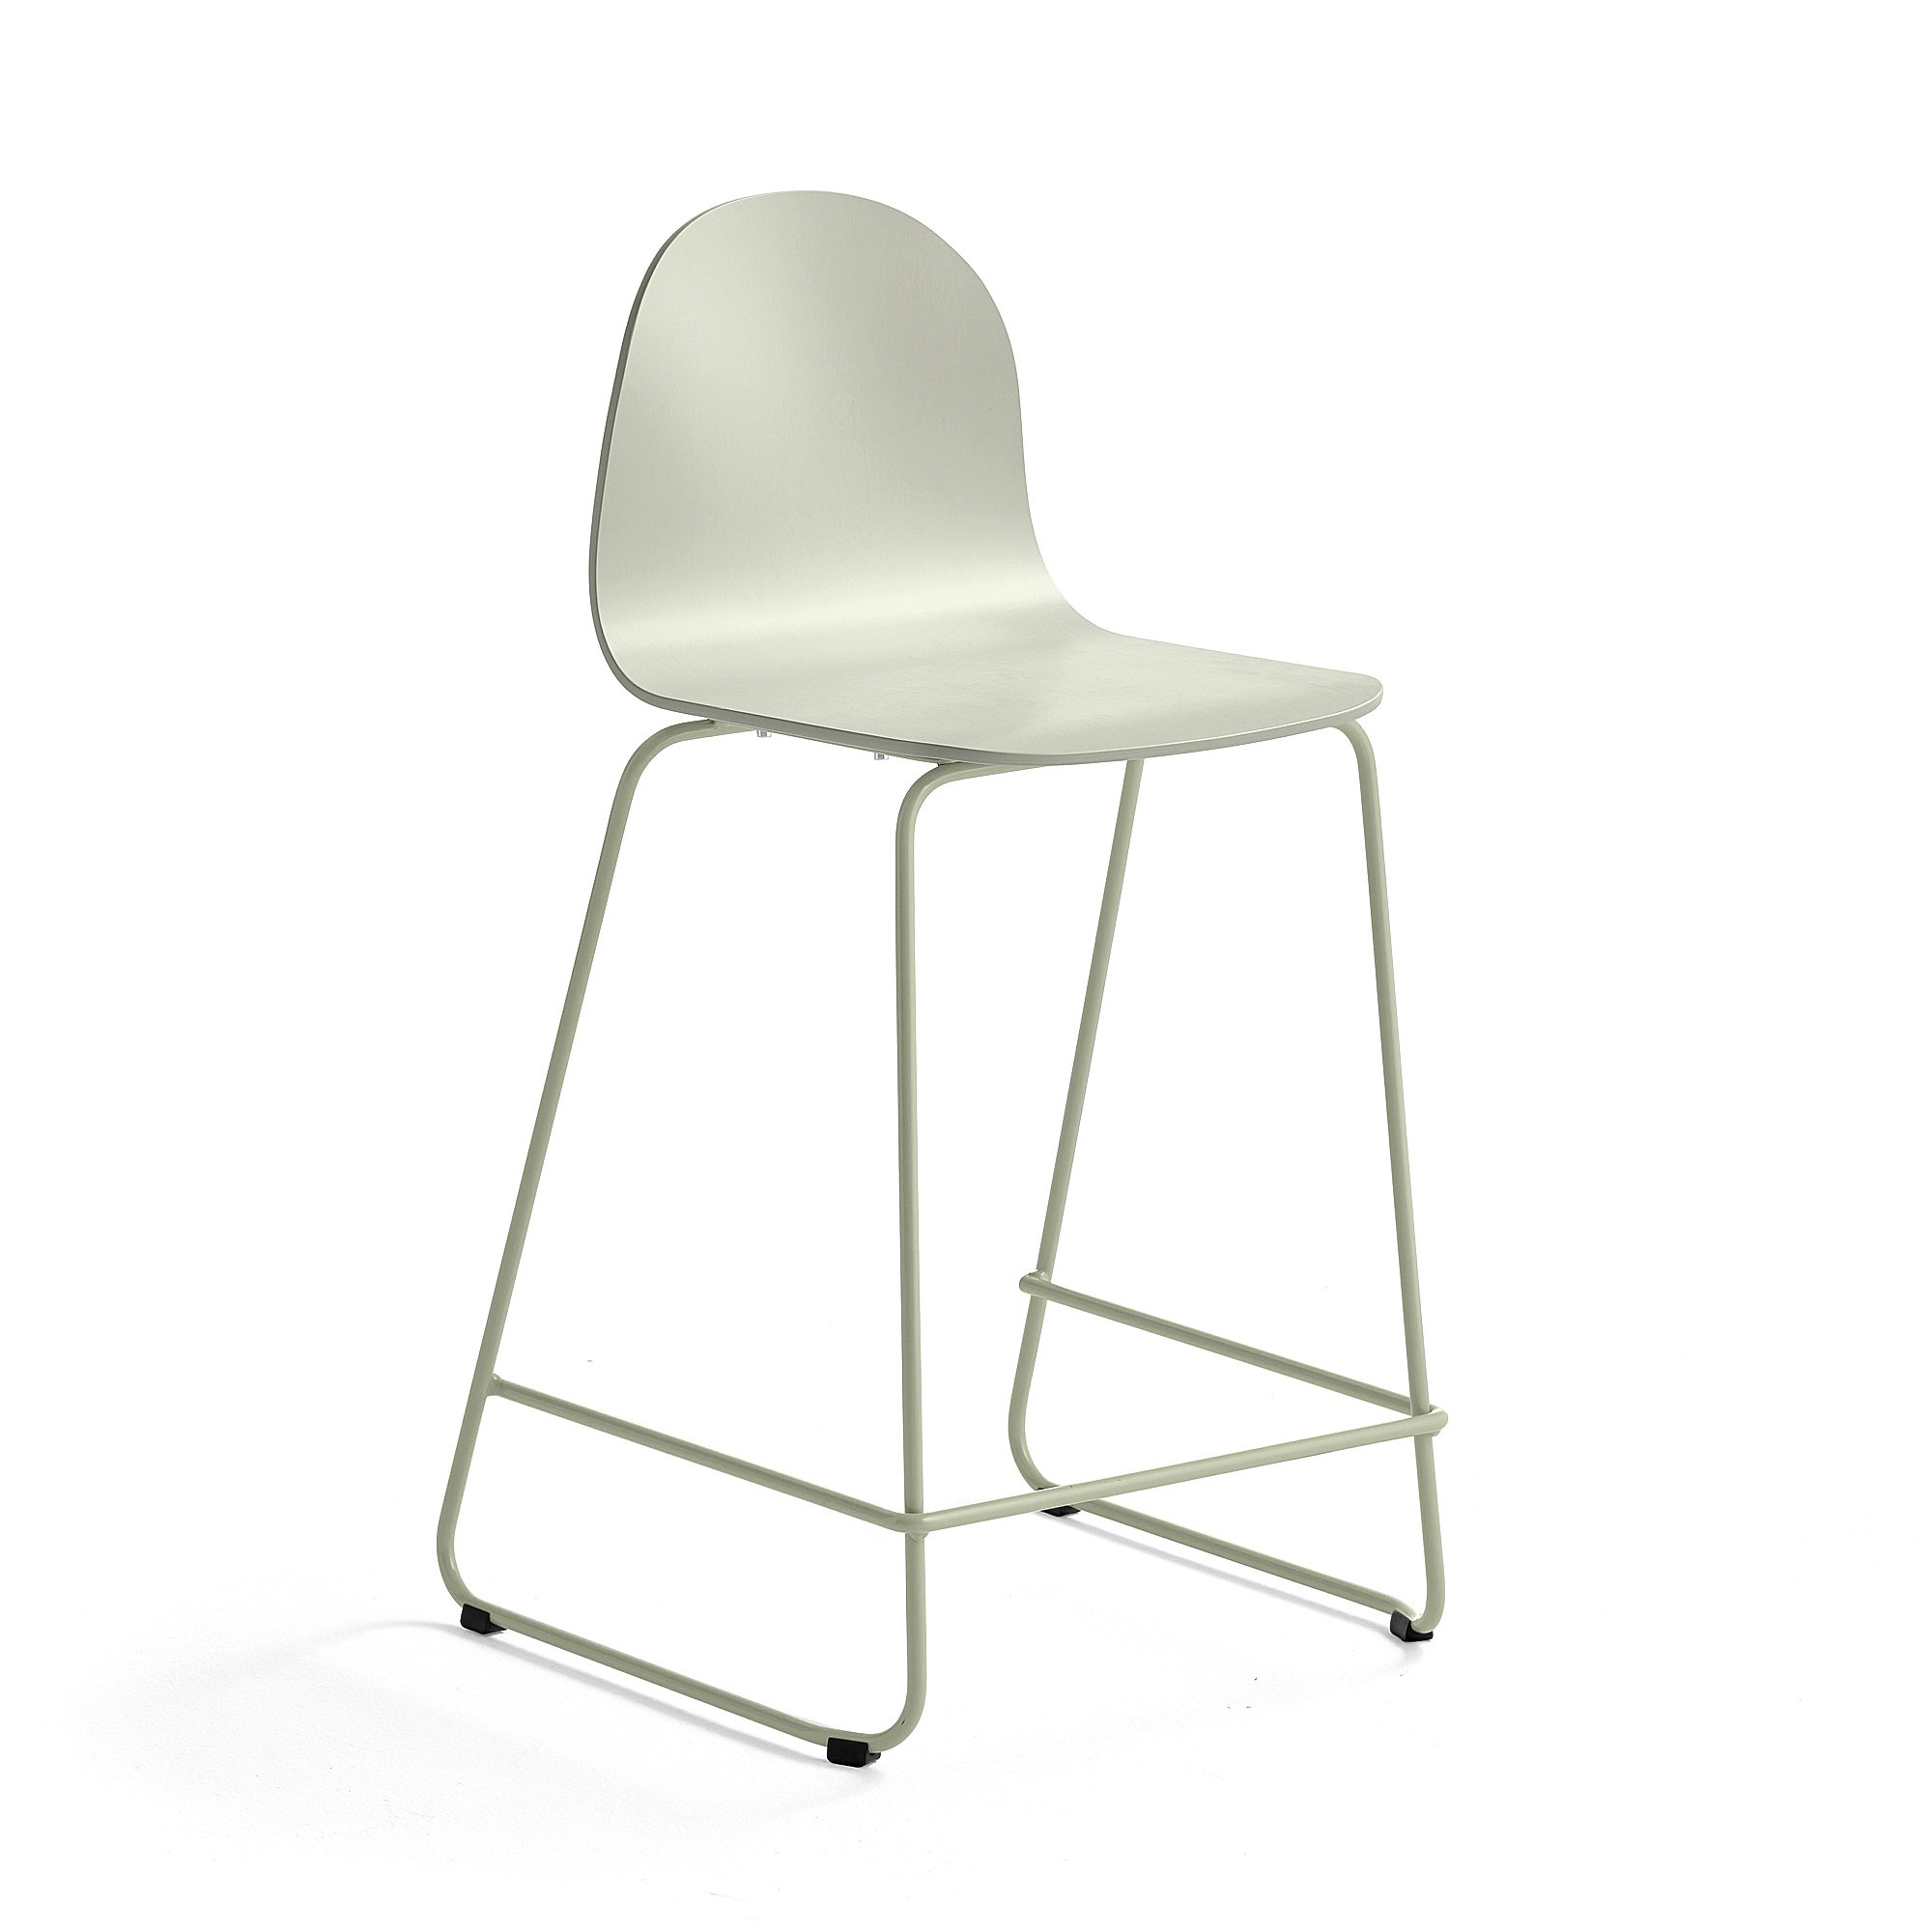 Barová židle GANDER, výška sedáku 630 mm, lakovaná skořepina, zelenošedá